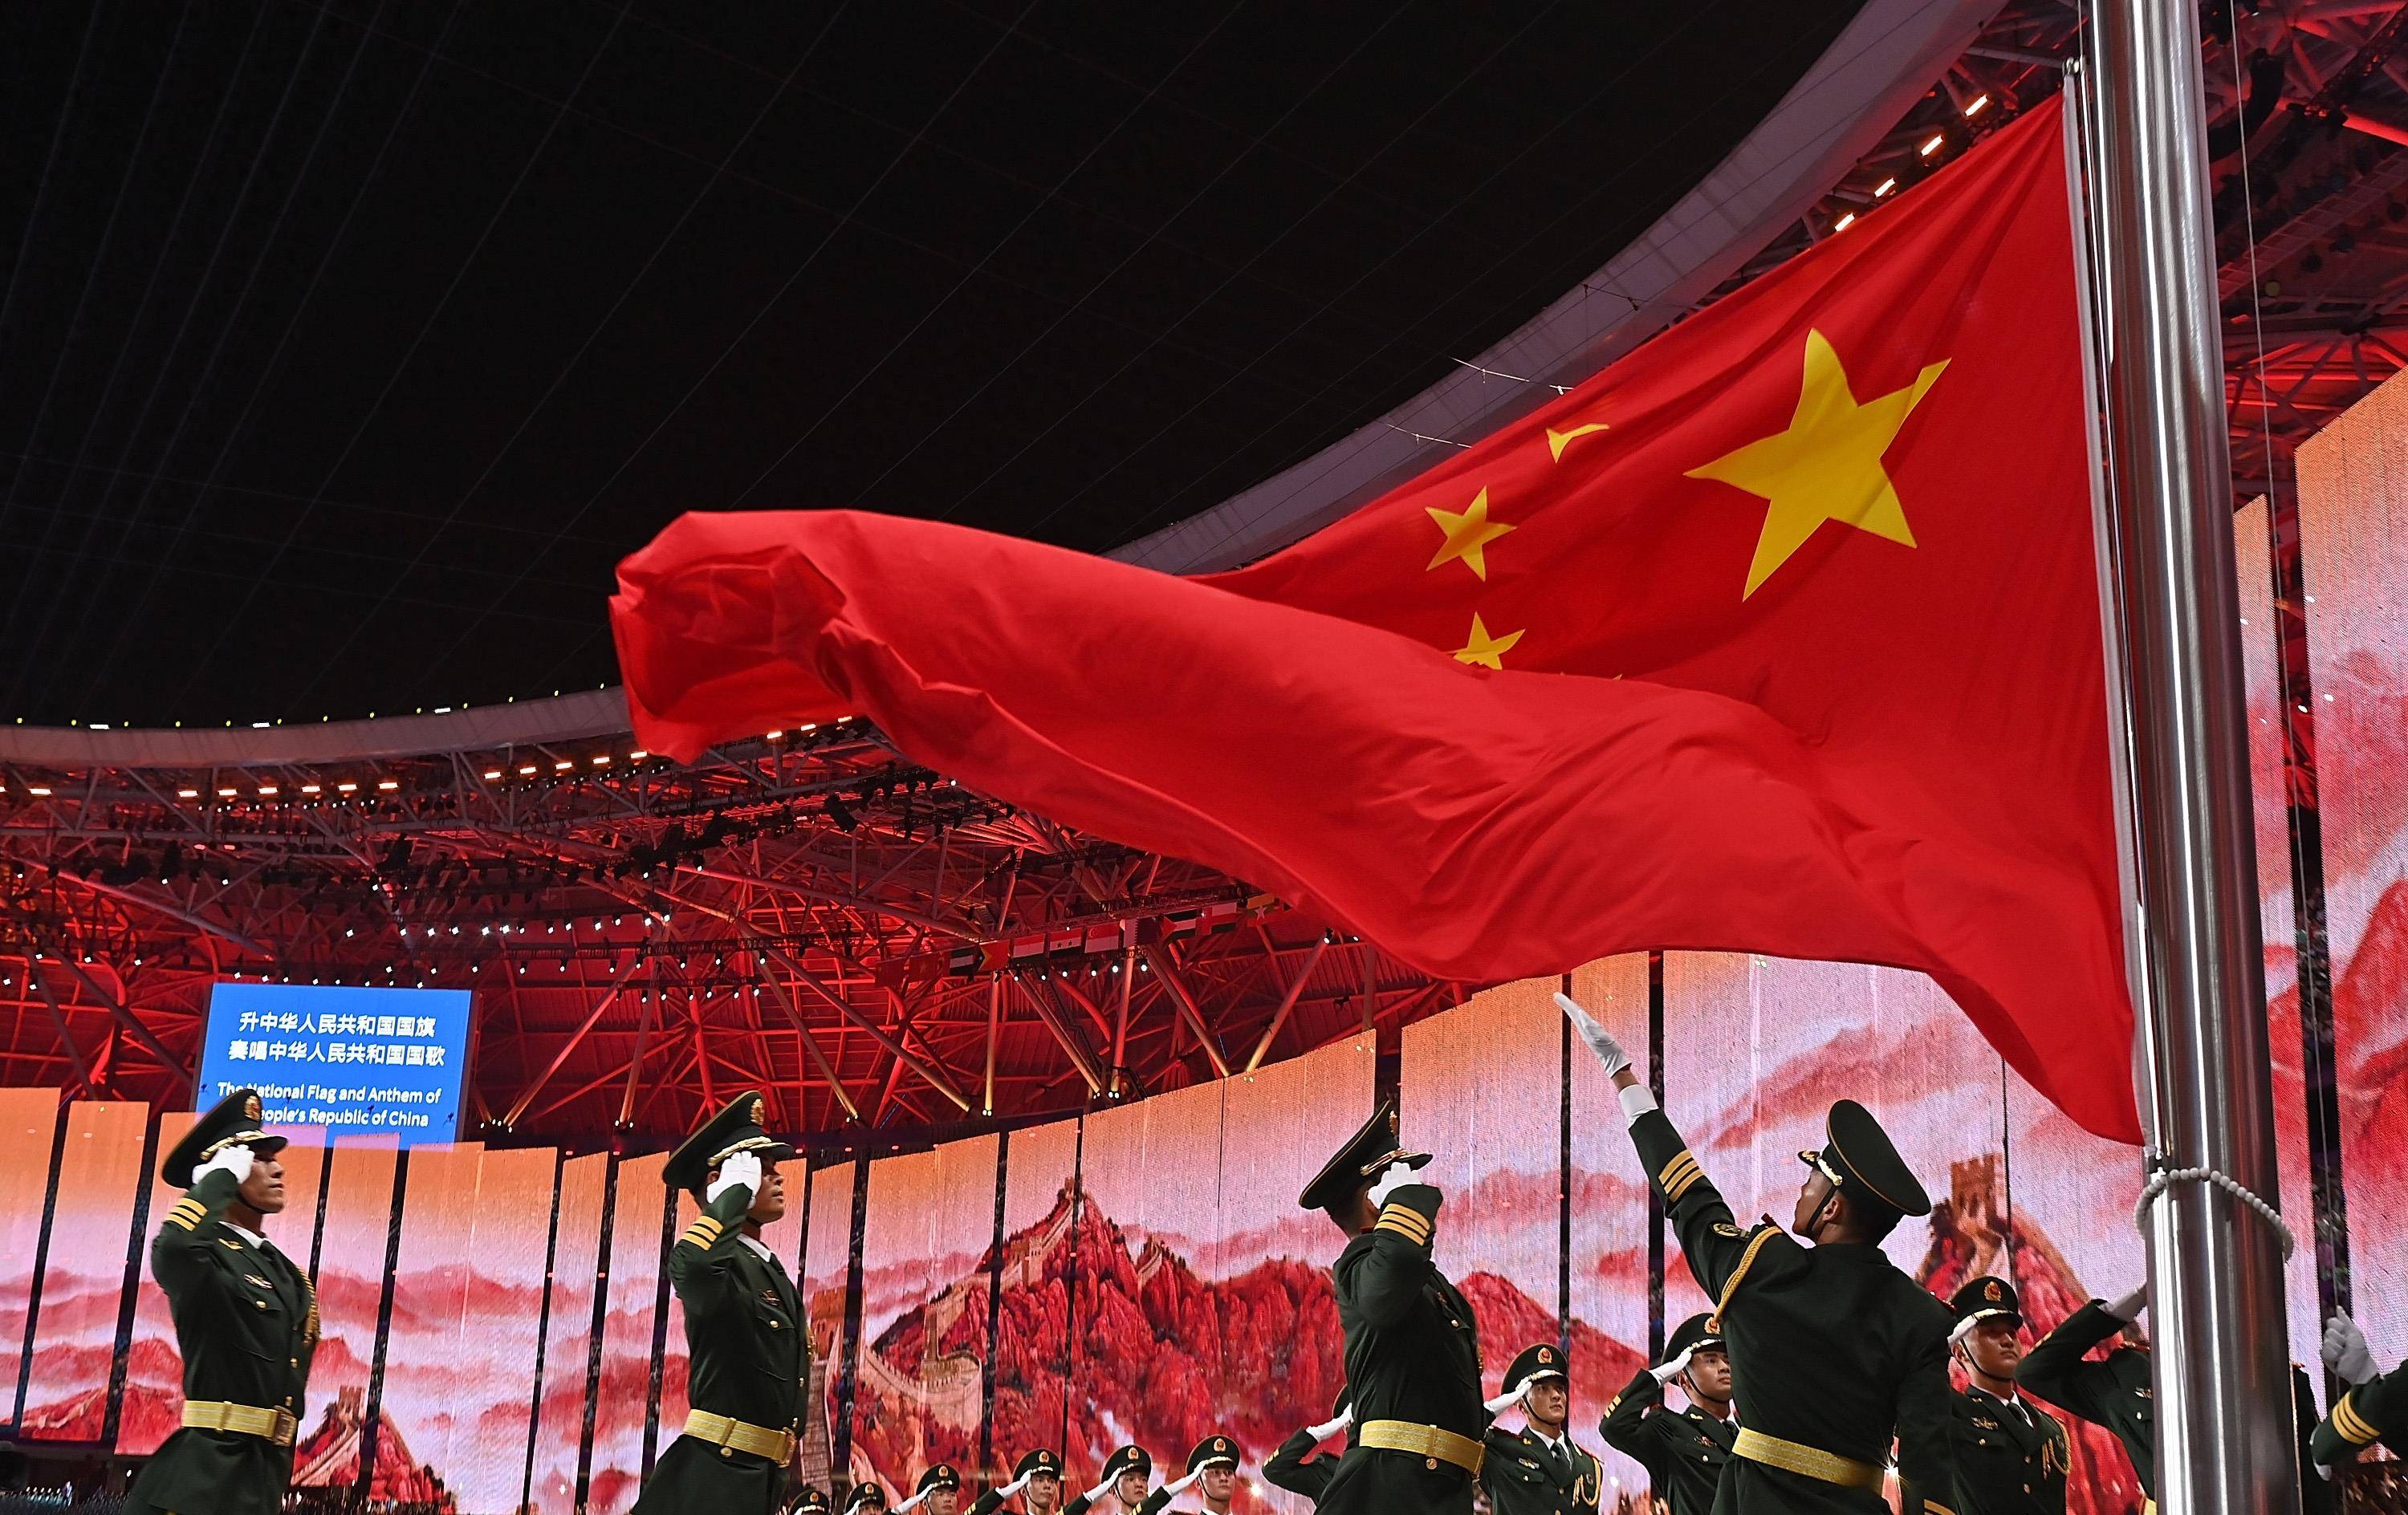 中华人民共和国国旗庄严入场,亚运会开幕式现场响起《我爱你我们》